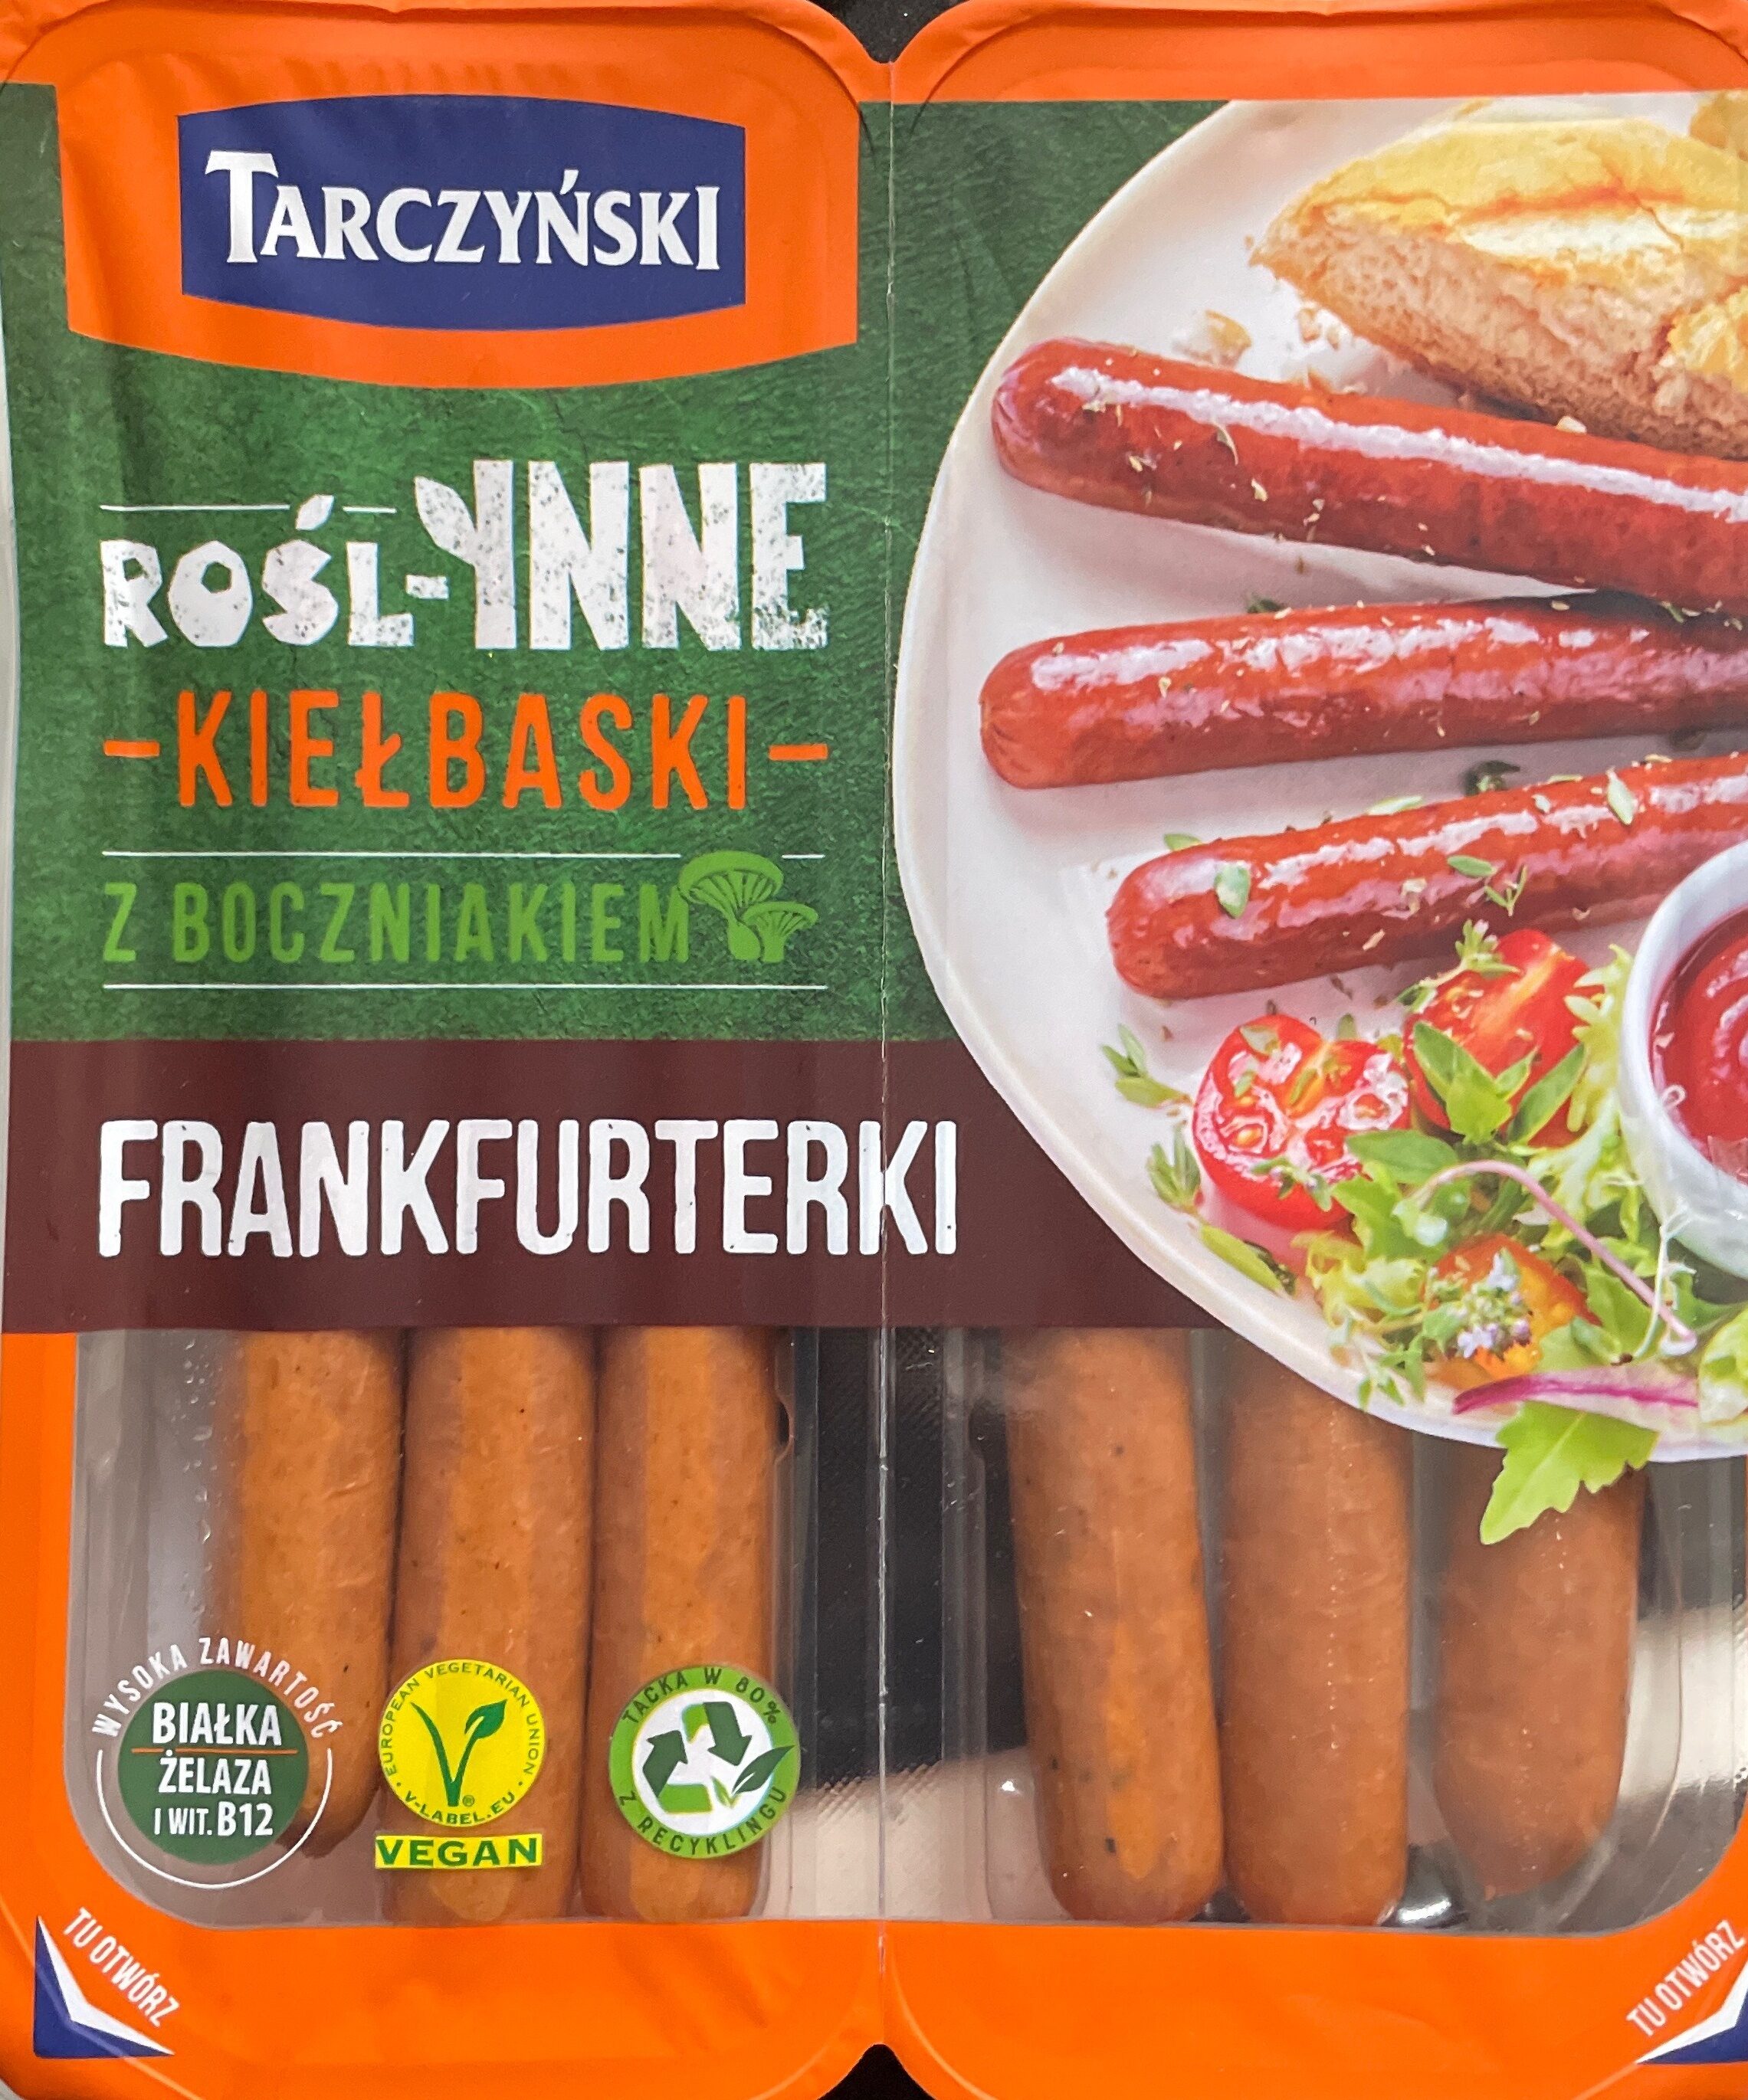 Rośl-inne Kiełbaski z boczniakiem - Frankfurterki - Produkt